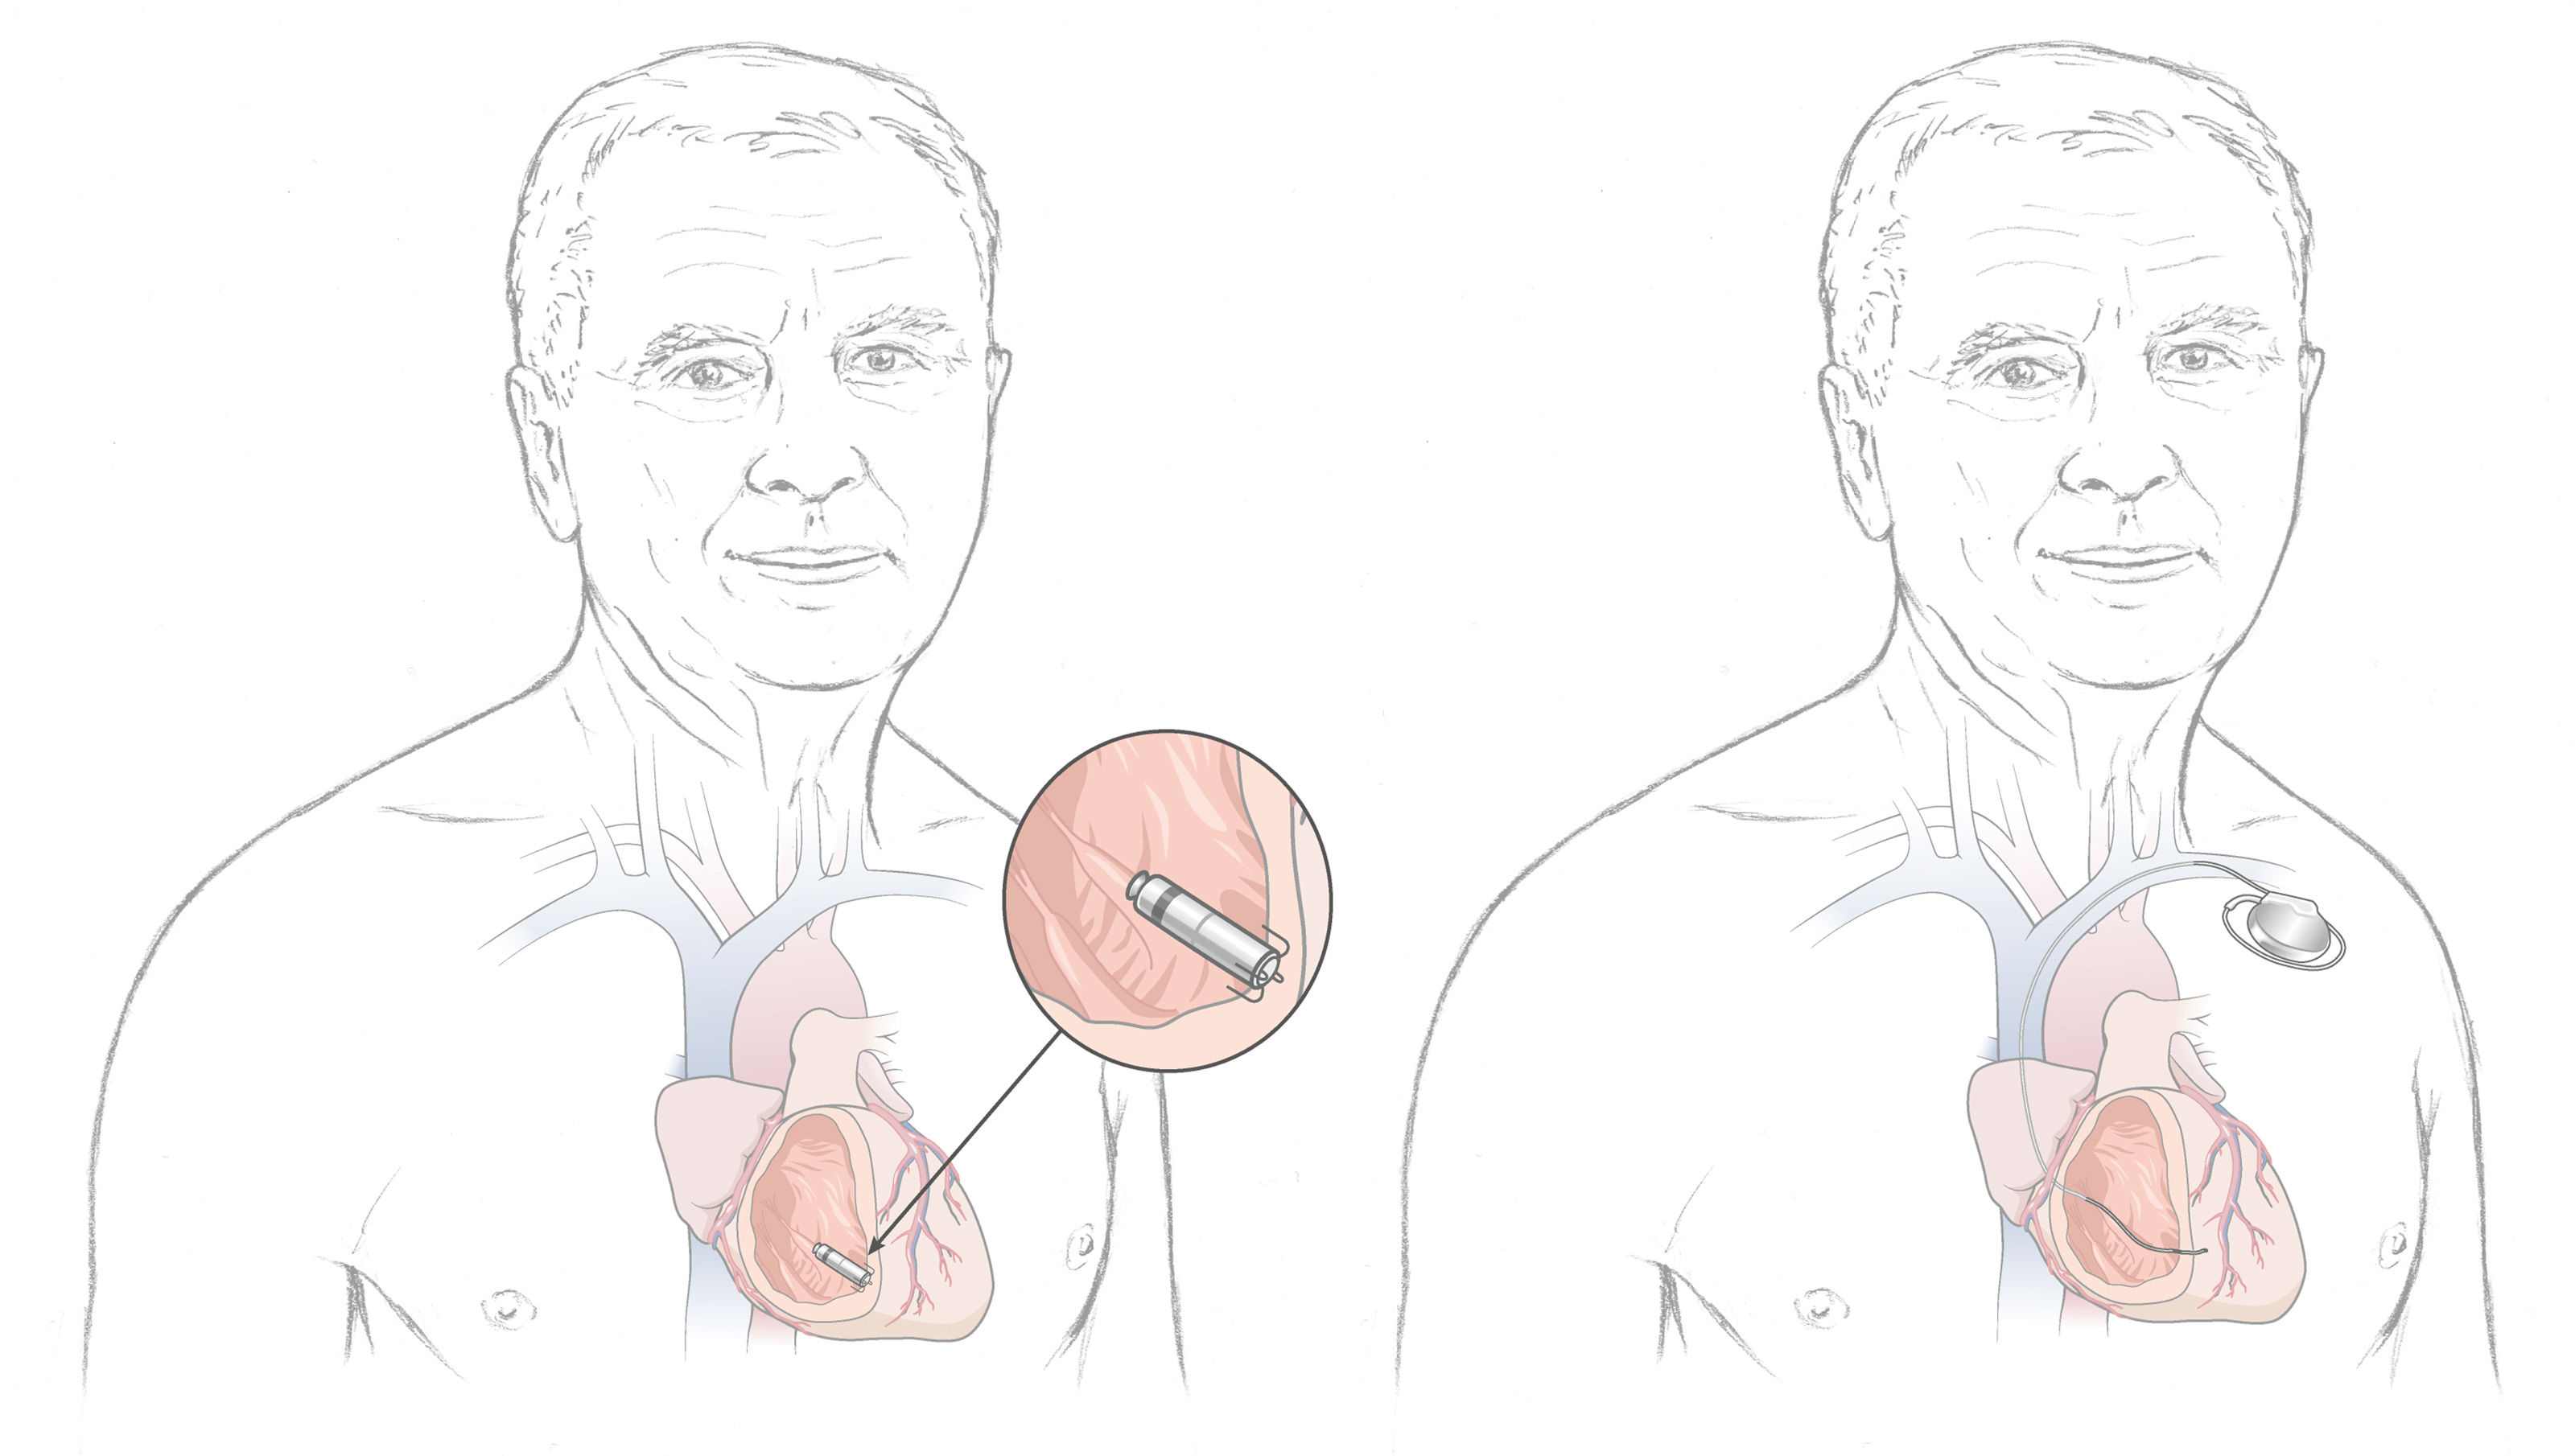 oculus-illustration-spital-herz-kardiologie-kardiokapsel